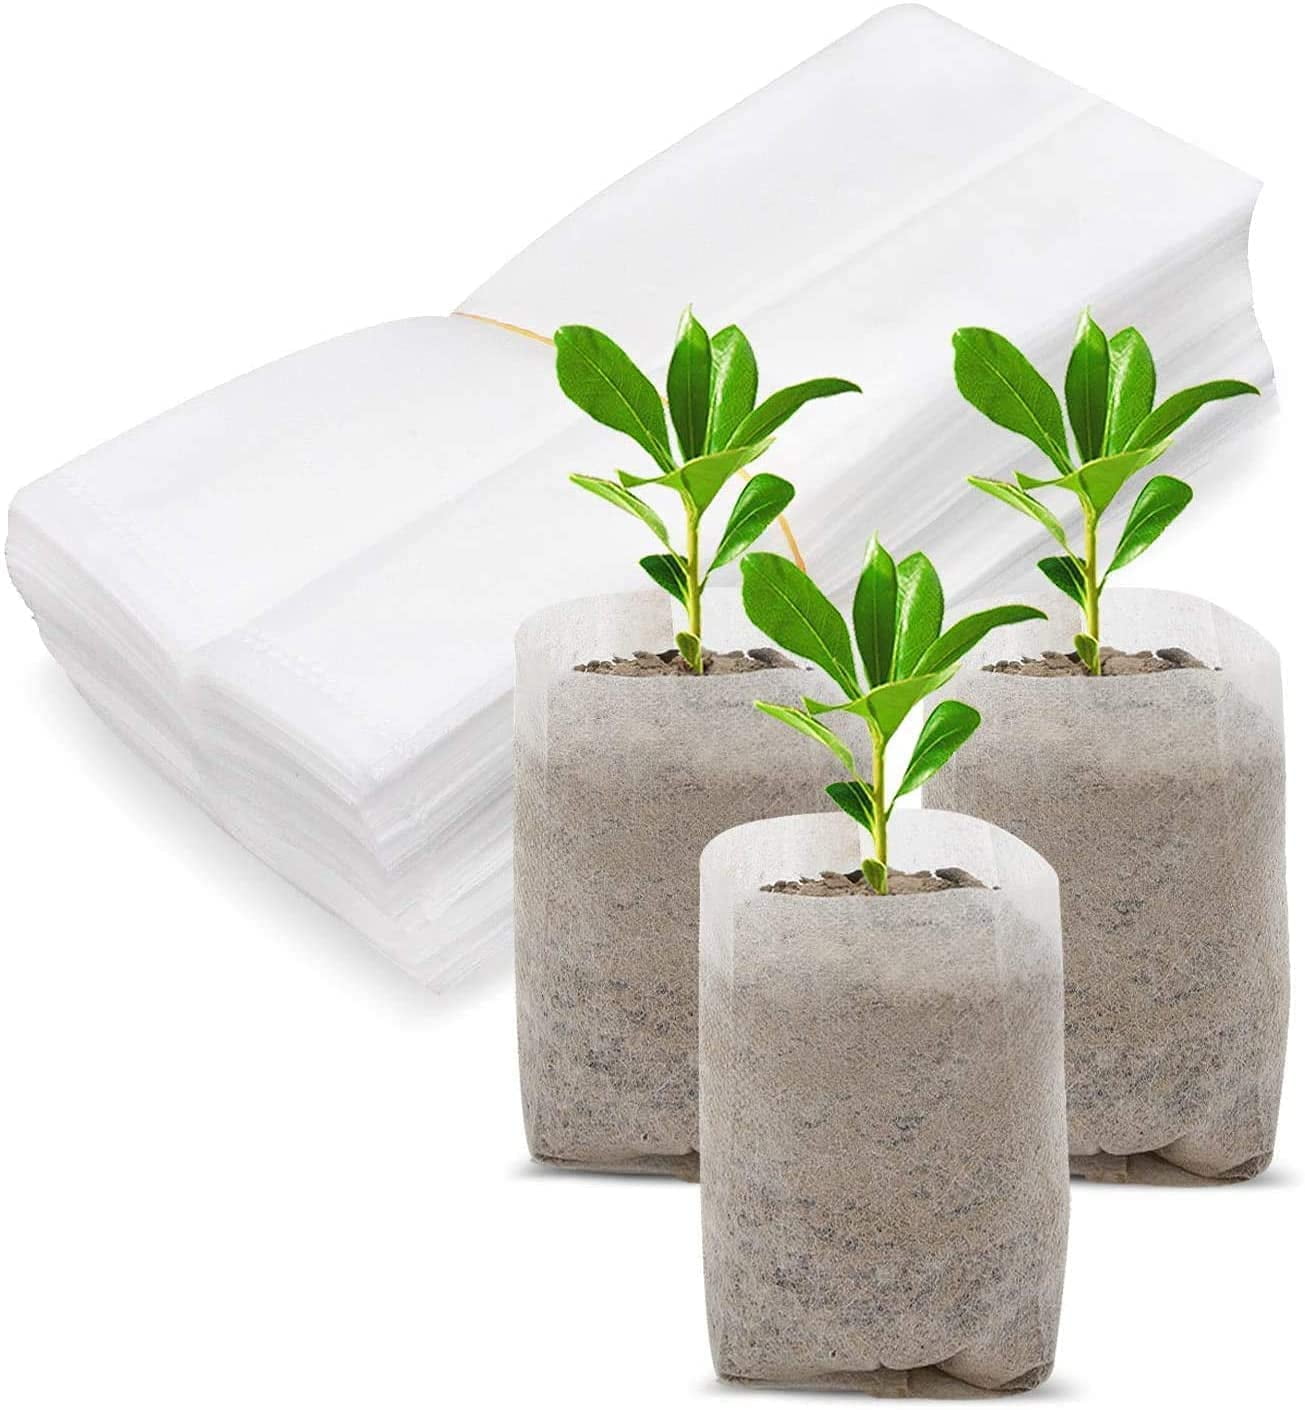 Biodégradable Non tissé tissu Nursery Plant Grow Bags Culture Semis 100Pcs 